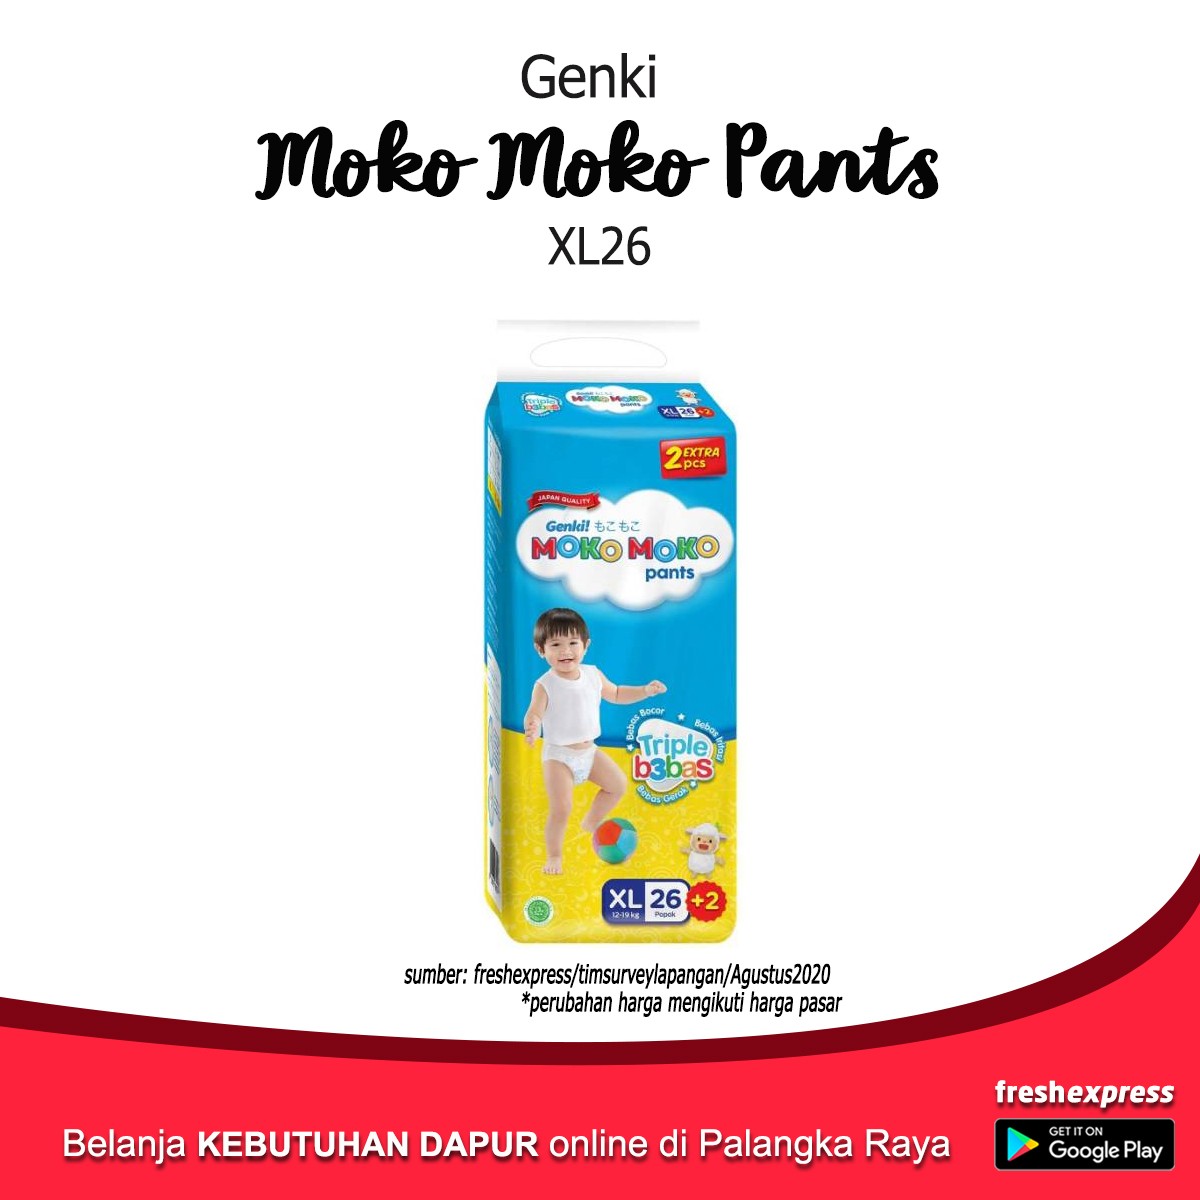 Genki Moko Moko Pants XL26